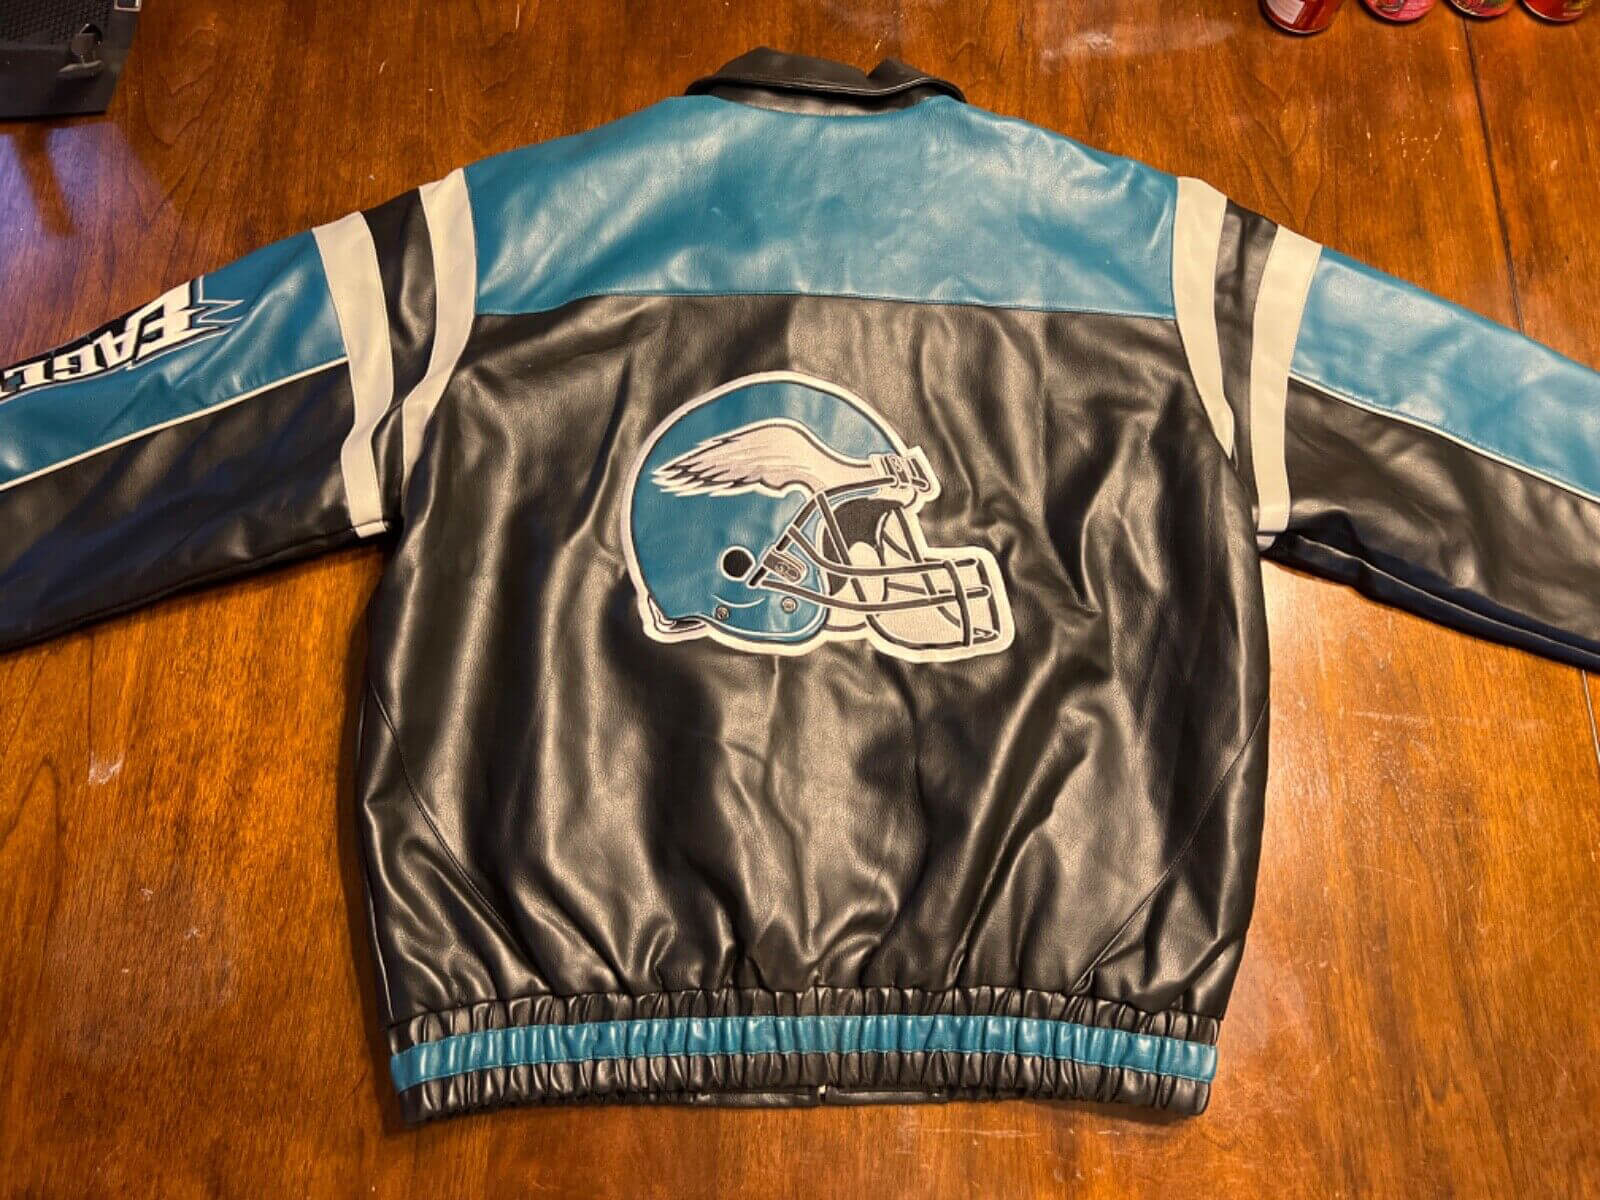 Vintage Reebok - Philadelphia Eagles Leather Jacket 1990s X-Large